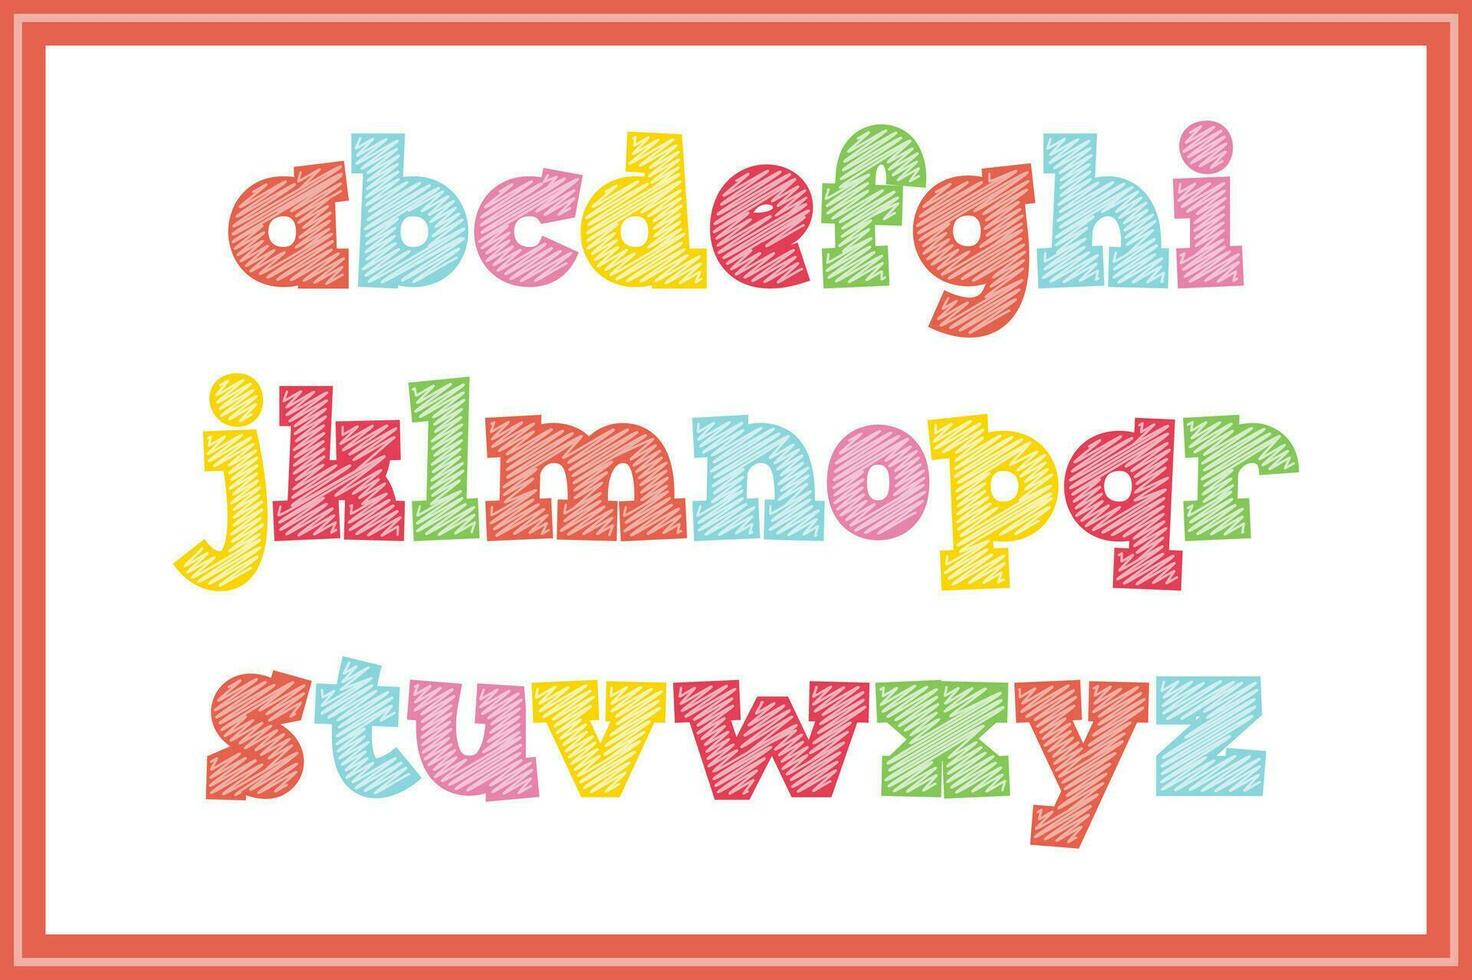 veelzijdig verzameling van kattebelletje creaties alfabet brieven voor divers toepassingen vector